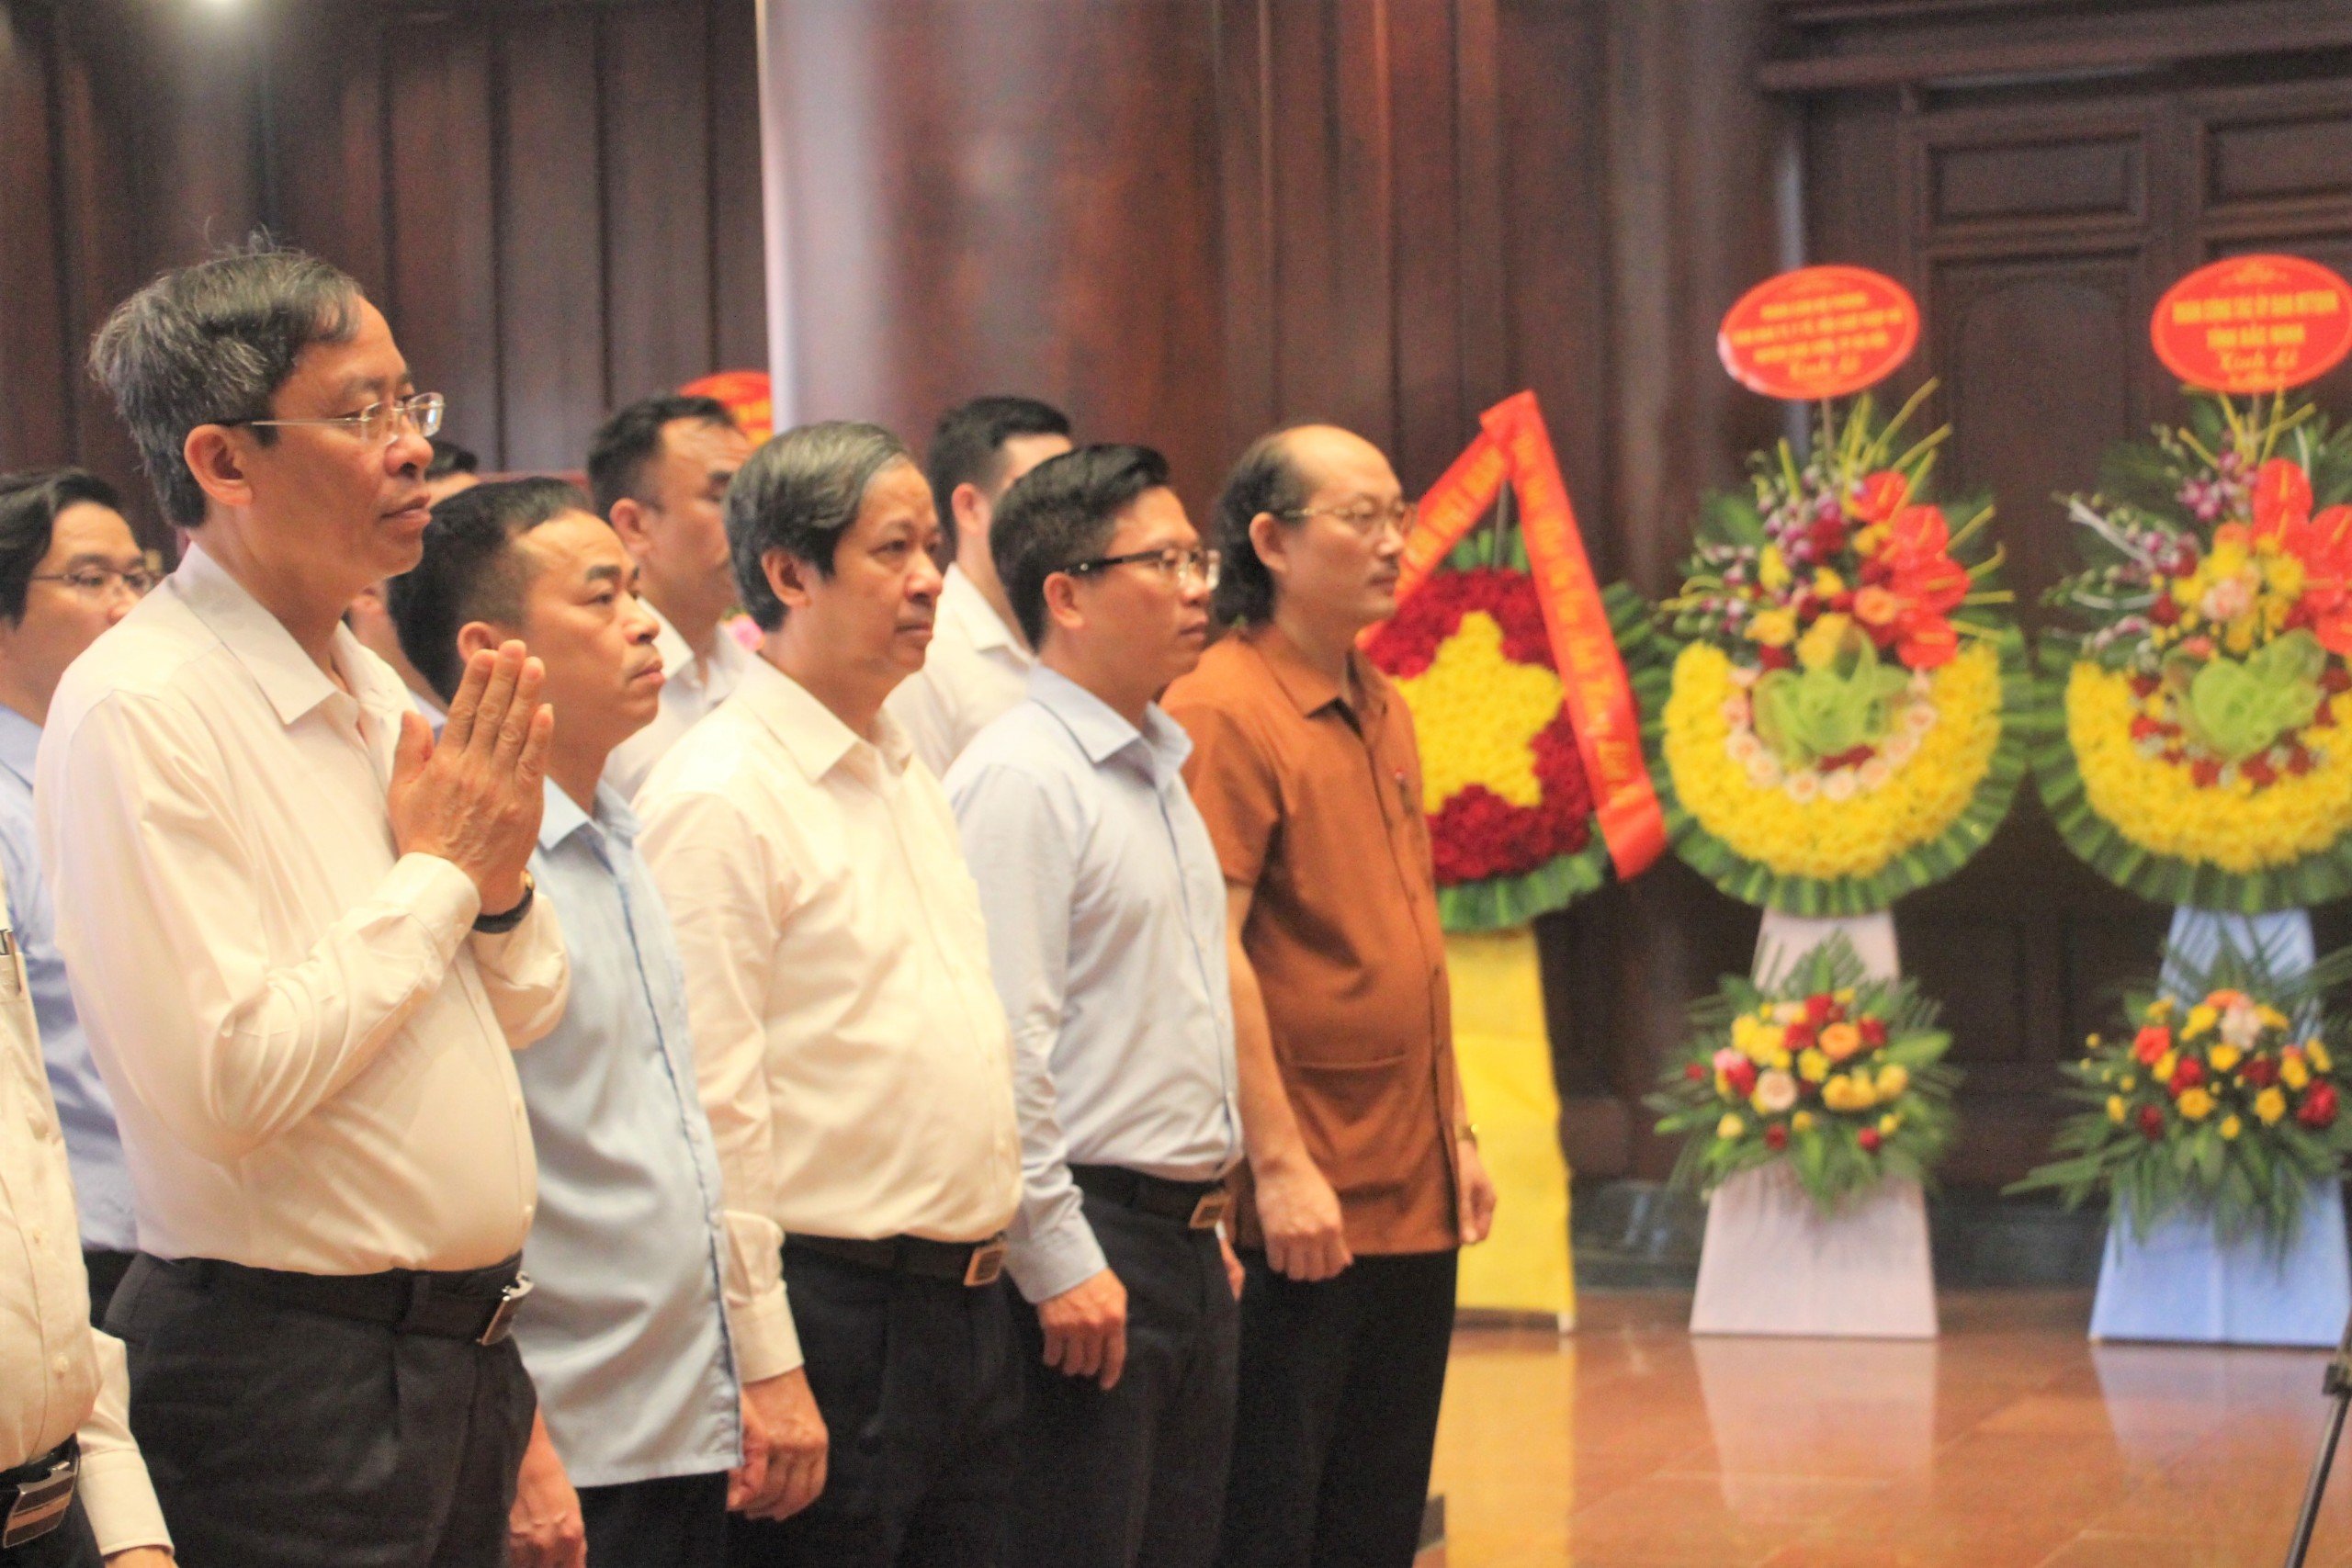 Bộ trưởng Nguyễn Kim Sơn (thứ 3 tính từ bên trái) cùng đoàn công tác, lãnh đạo UBND tỉnh Điện Biên, Sở GD&ĐT tỉnh Điện Biên viếng thăm Đền thờ liệt sĩ tại chiến trường Điện Biên Phủ.